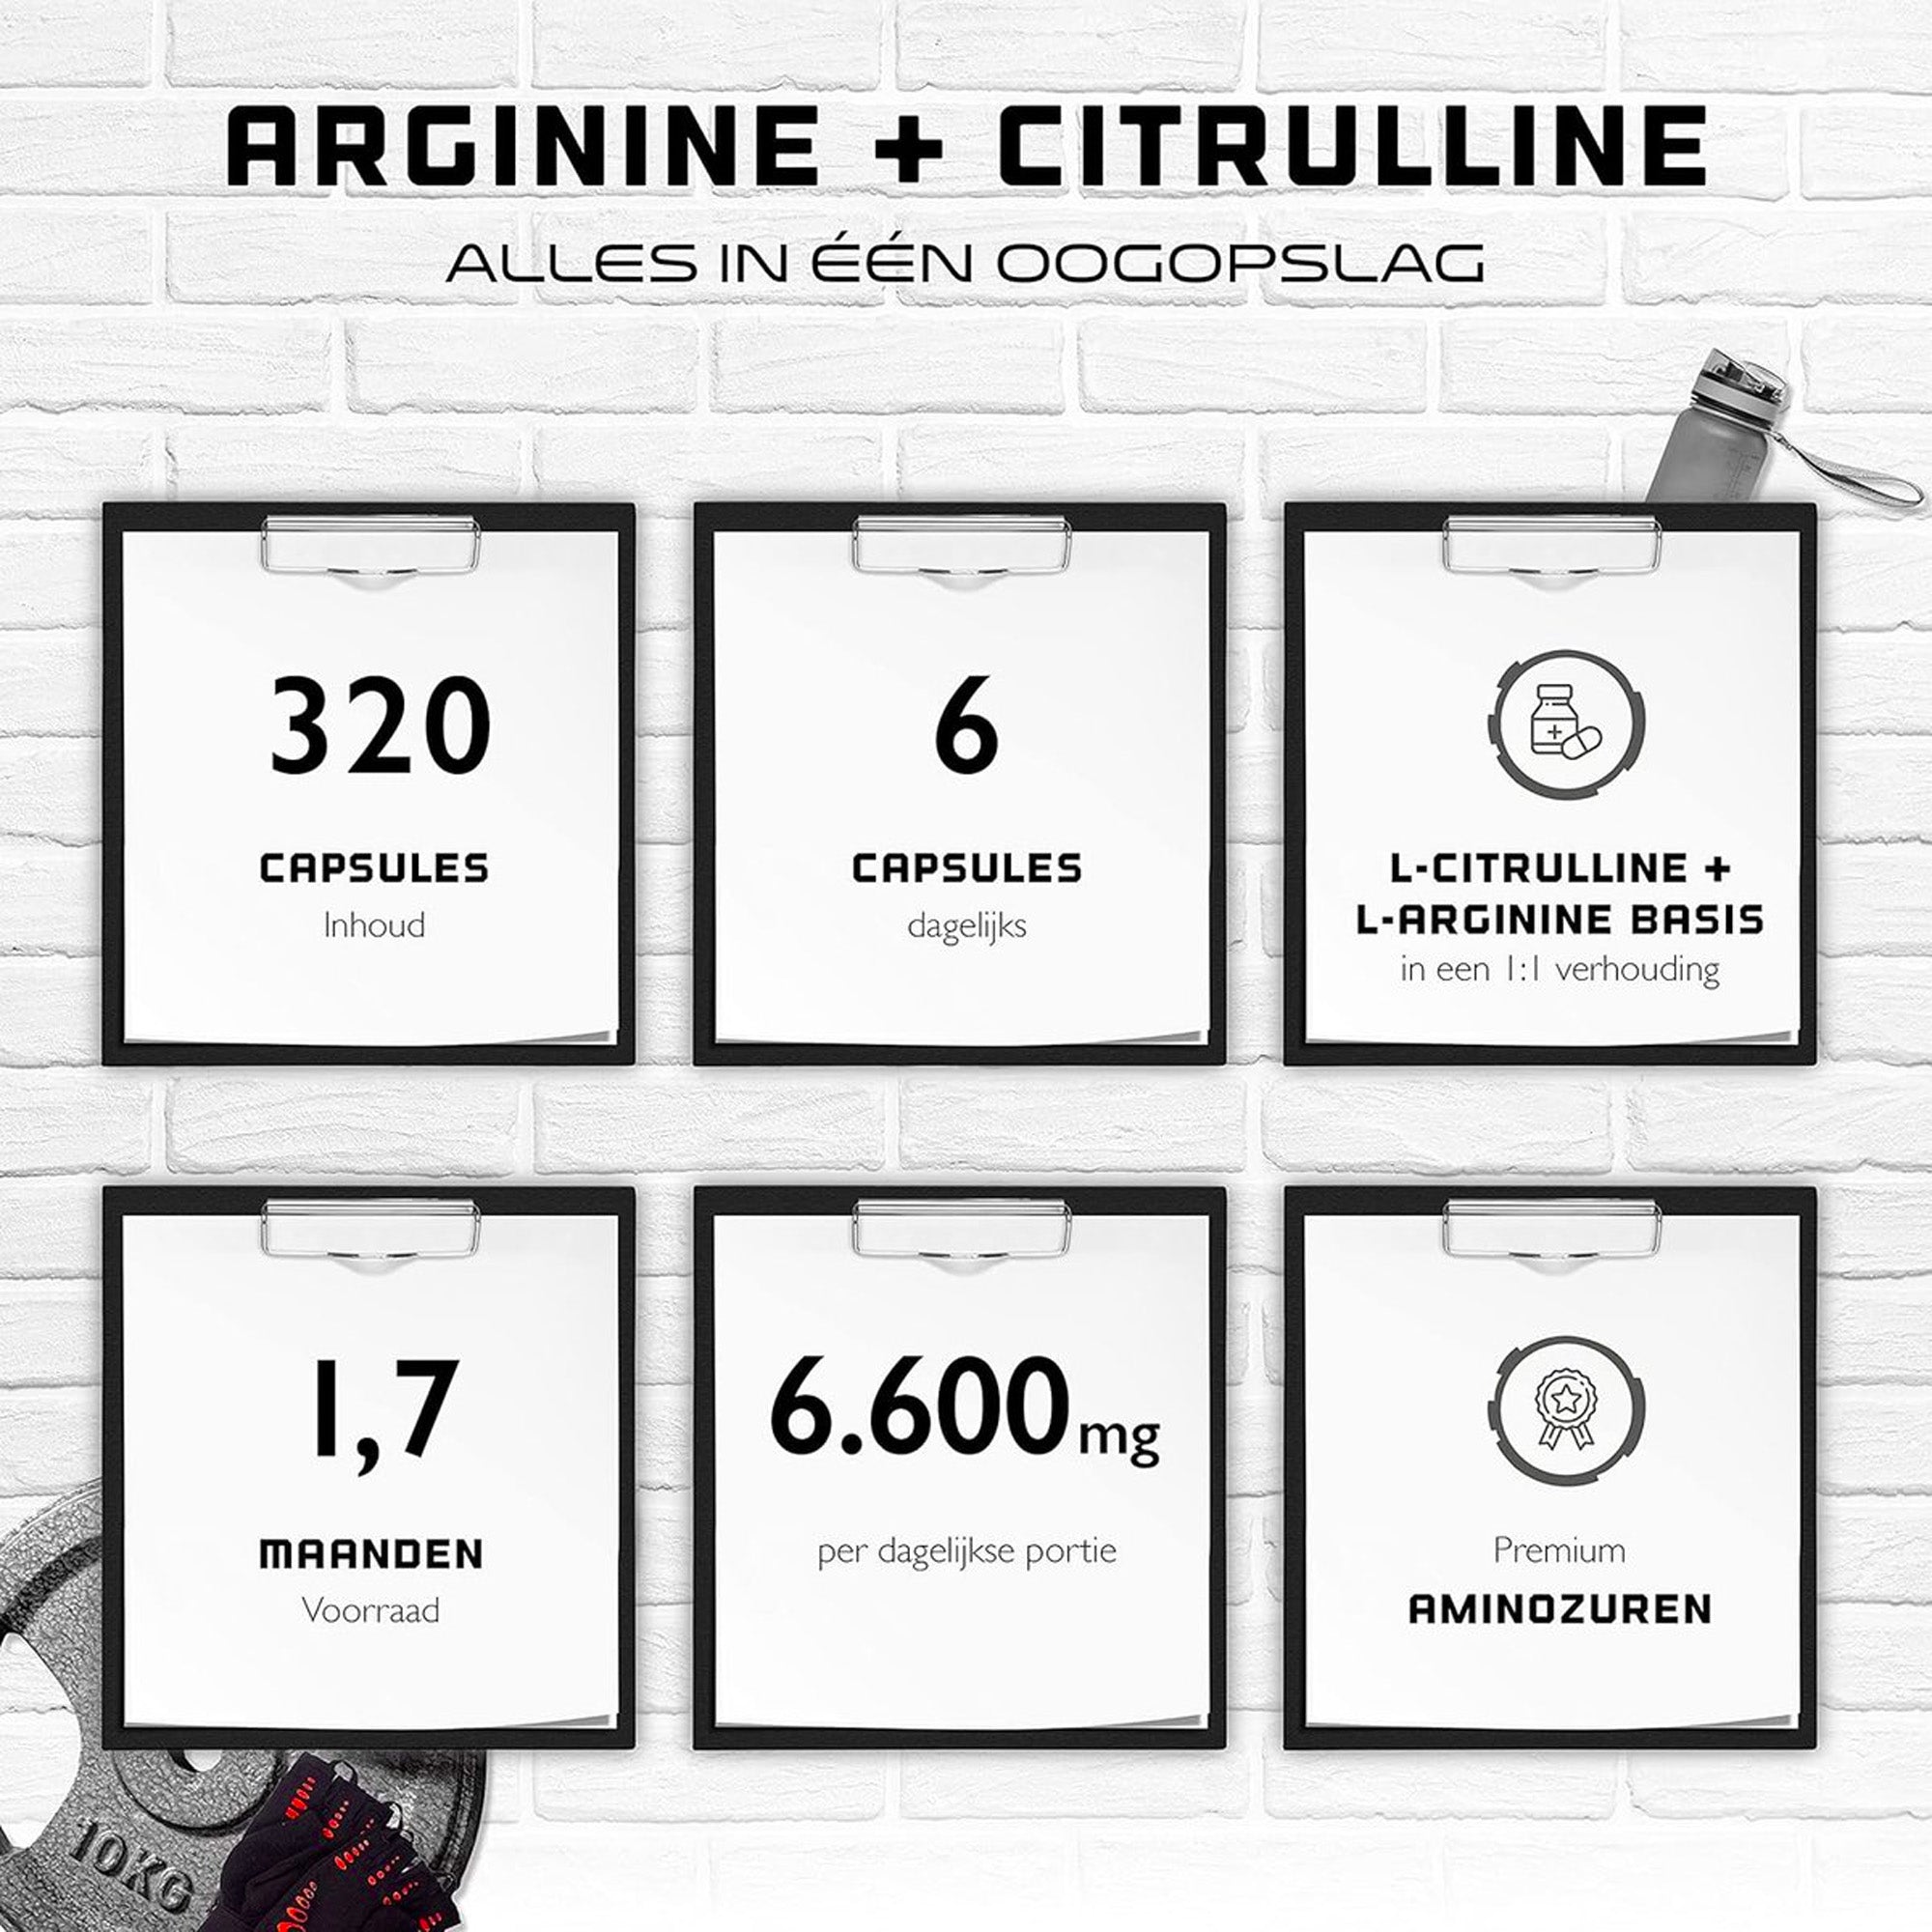 L-Arginine + L-Citrulline | 320 capsules | 1100 mg per capsule | Citrulline + Arginine Basis in 1:1 verhouding | Premium Aminozuren